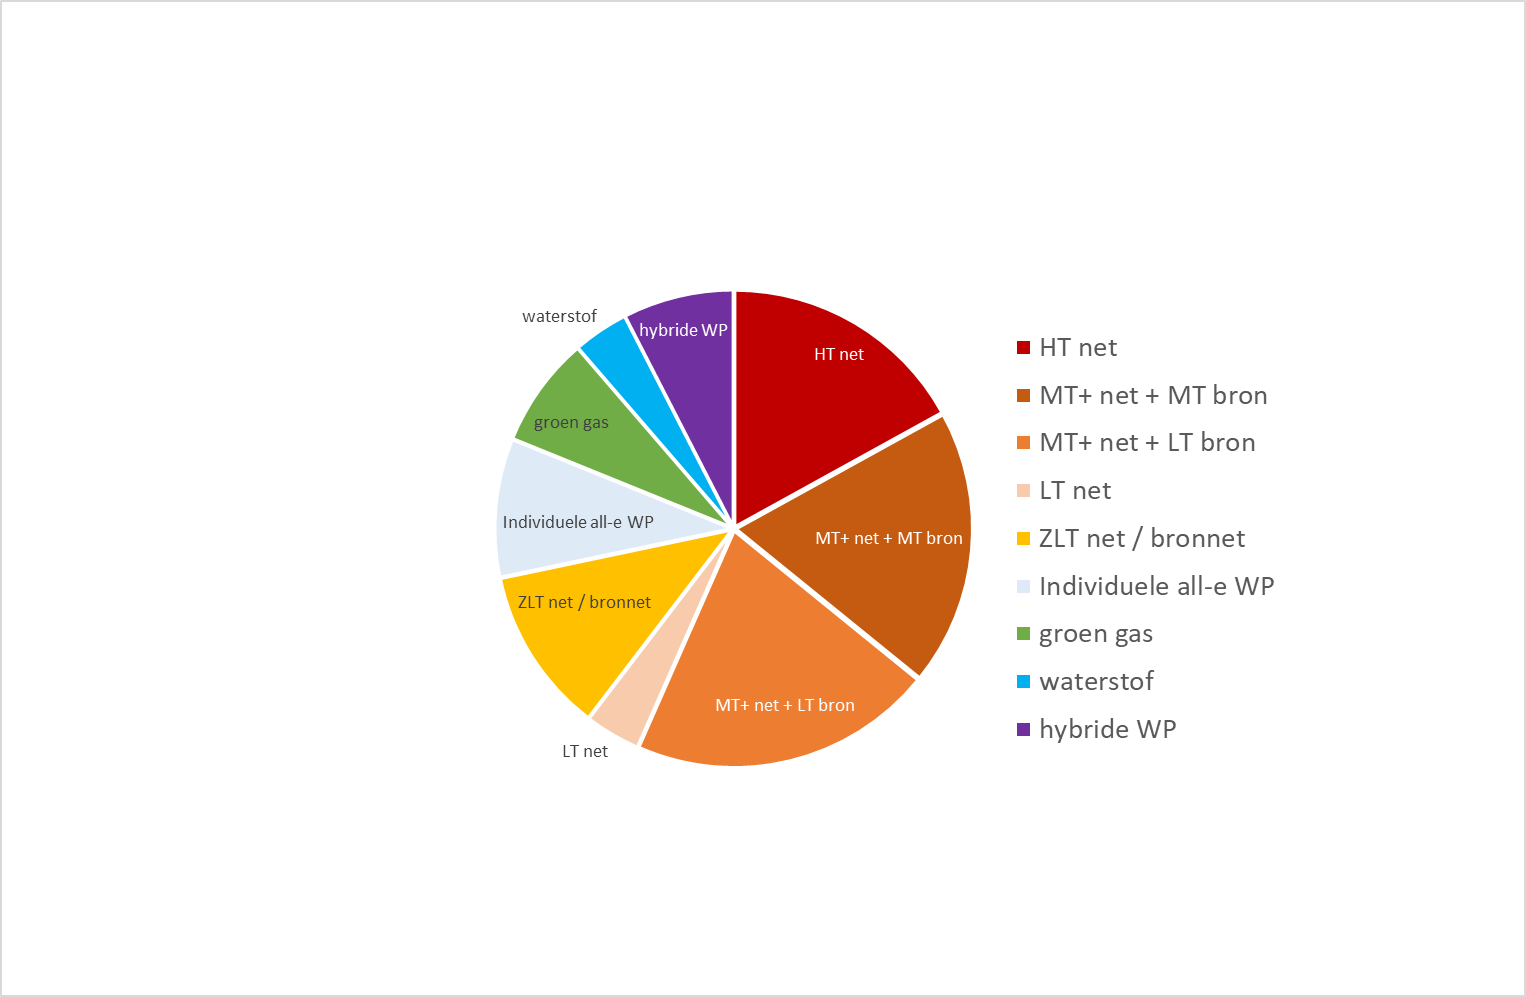 MT+ net + MT bron: 17%, MT+ net + LT bron: 19%, LT net: 21%, ZLT net /bronnet: 11%, individuele all-e WP: 9%, groen gas: 8%, waterstof 4%, hybride WP: 8%.